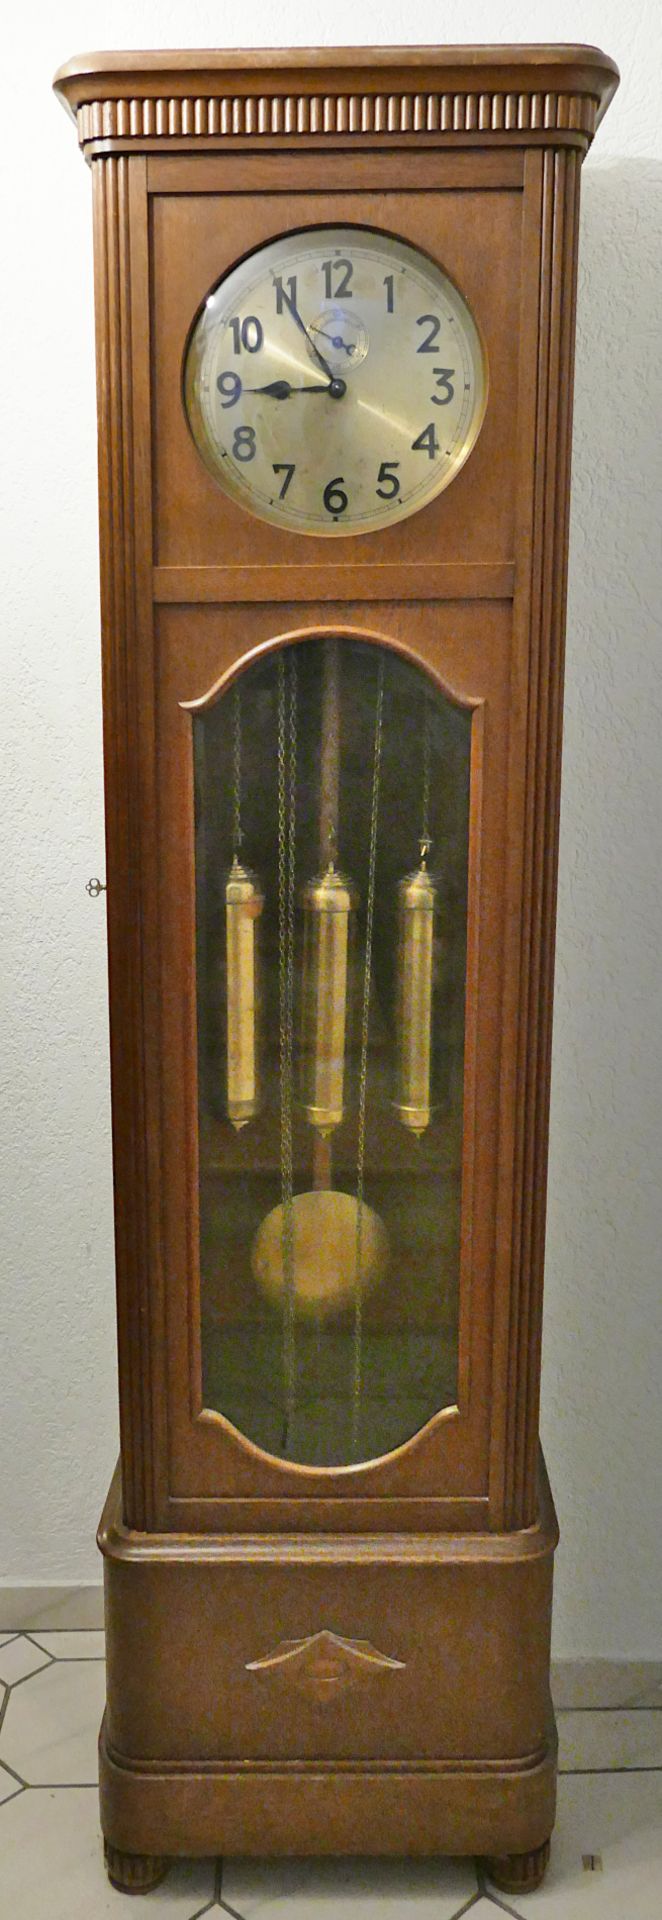 1 Standuhr wohl um 1920 Holzgehäuse, Metallziffernblatt, Pendel, 3 Gewichte, ca. 198x53x30cm, Vierte